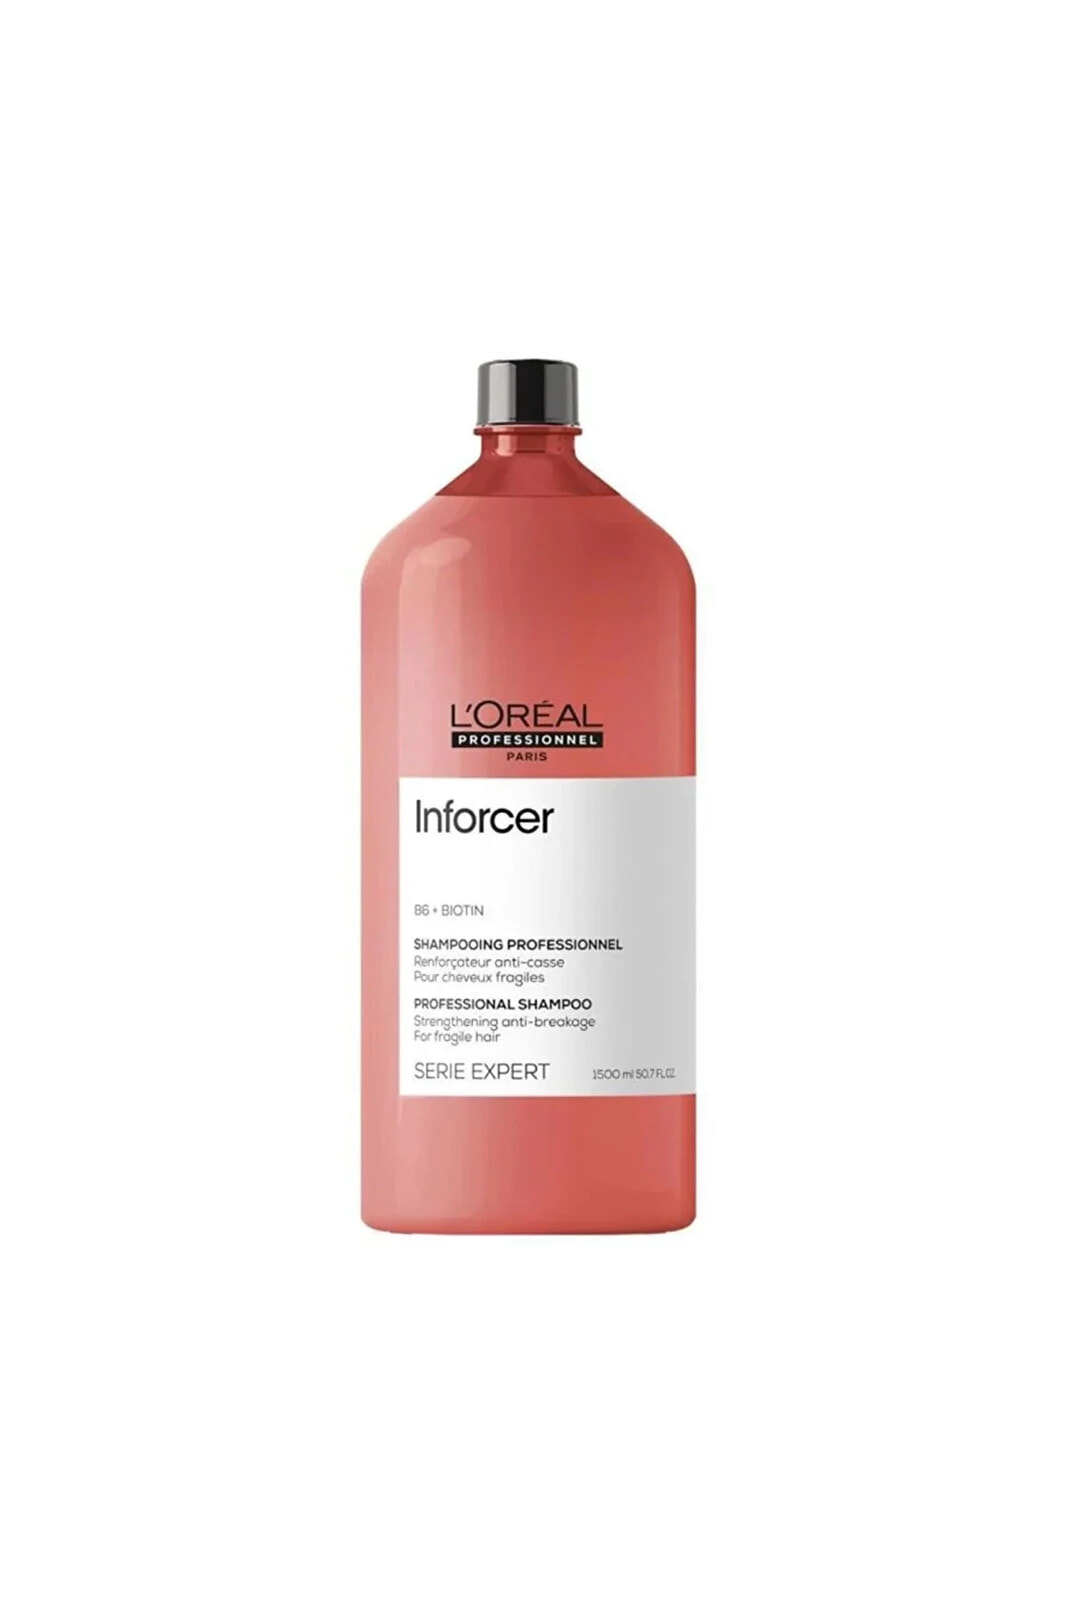 L'Oreal Professionnel Inforcer Shampoo Укрепляющий шампунь с витамином В6 и биотином для ломких волос 1500 мл